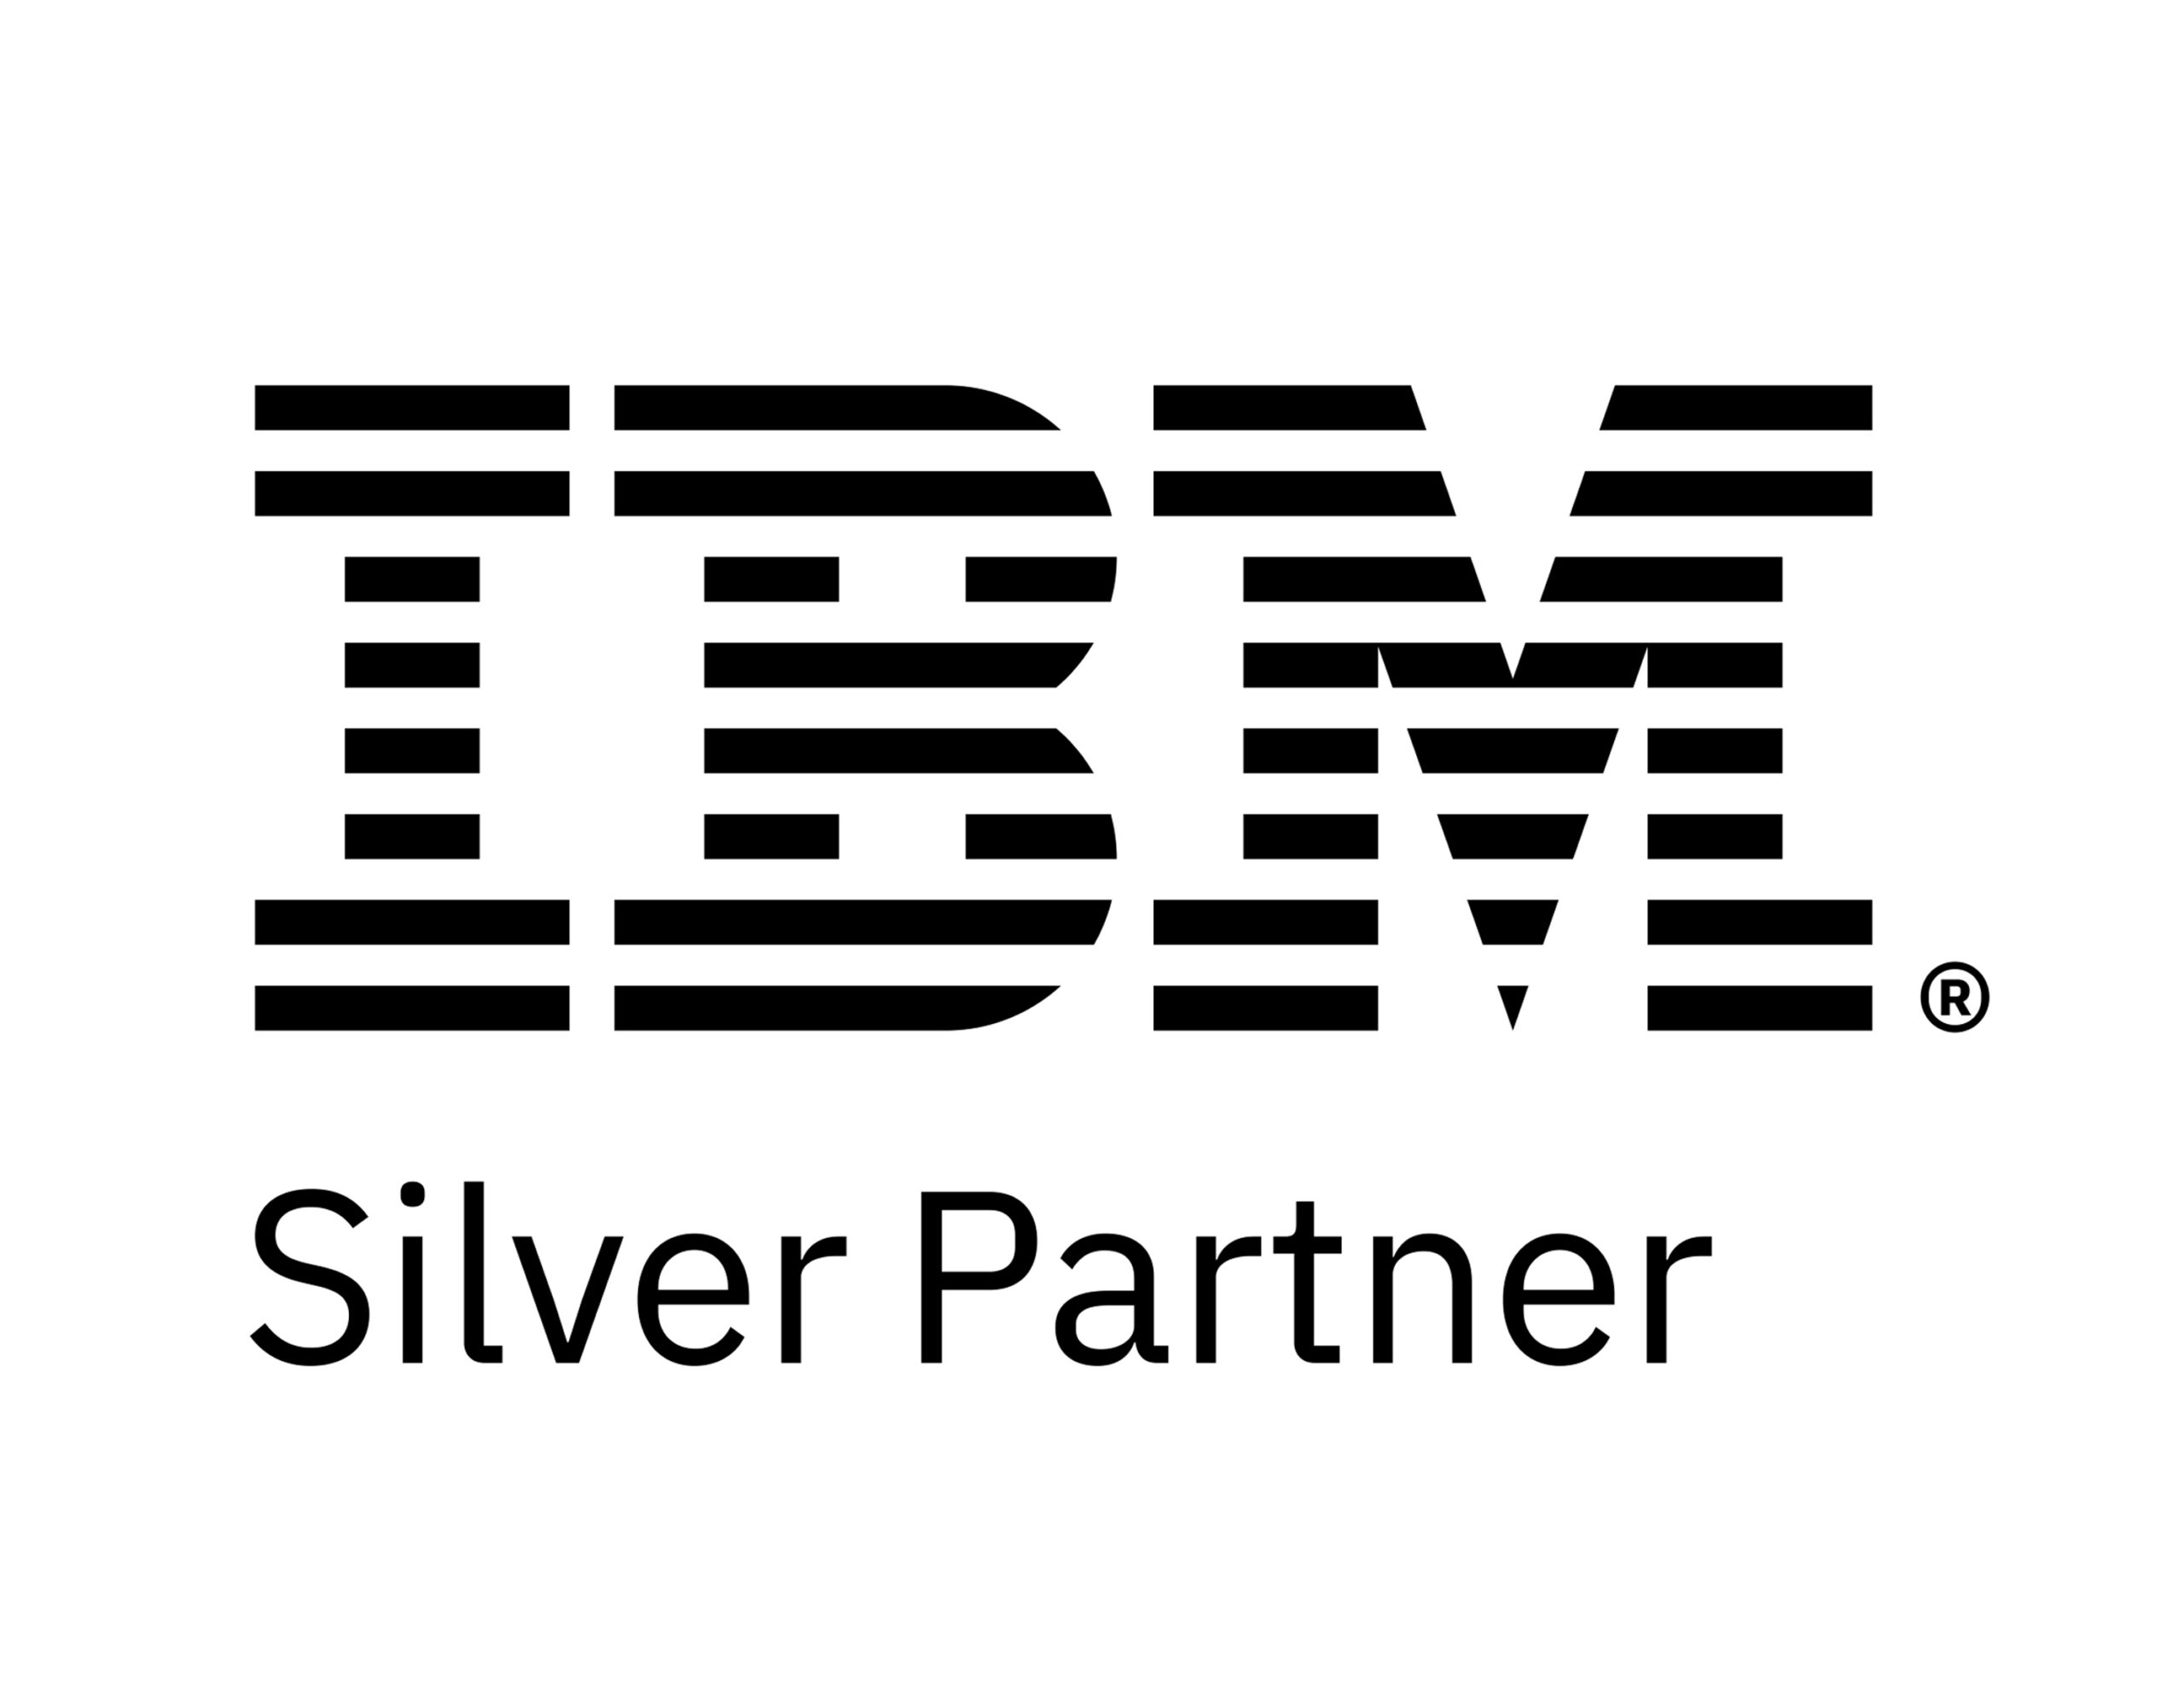 IBM silver partner